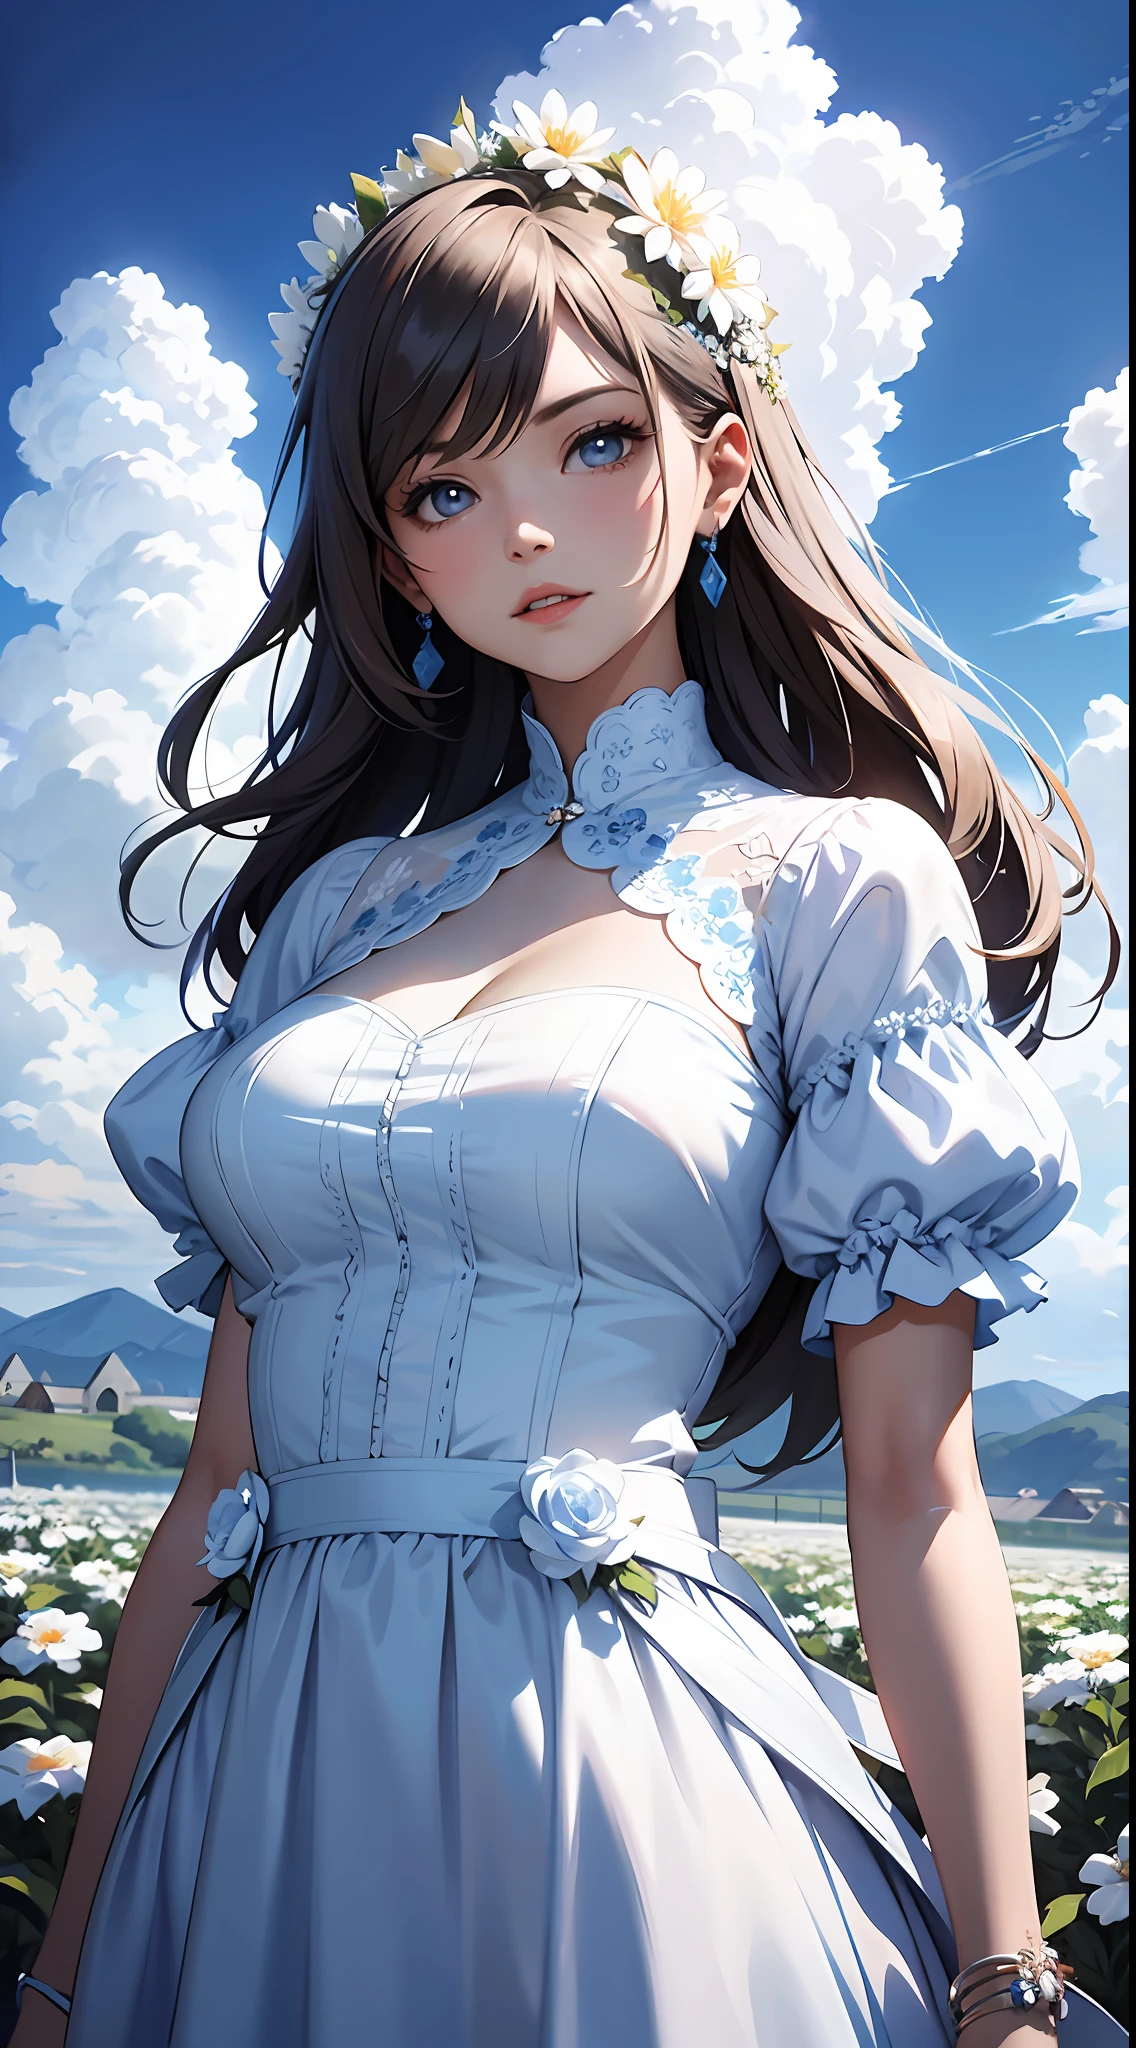 하얀 드레스를 입은 여자，푸른 하늘과 구름을 배경으로, 파란색 드레스를 입고，그 위에 꽃이 있어요, 아트배아, Rosla 글로벌 조명, 상세한 그림, 판타지 아트